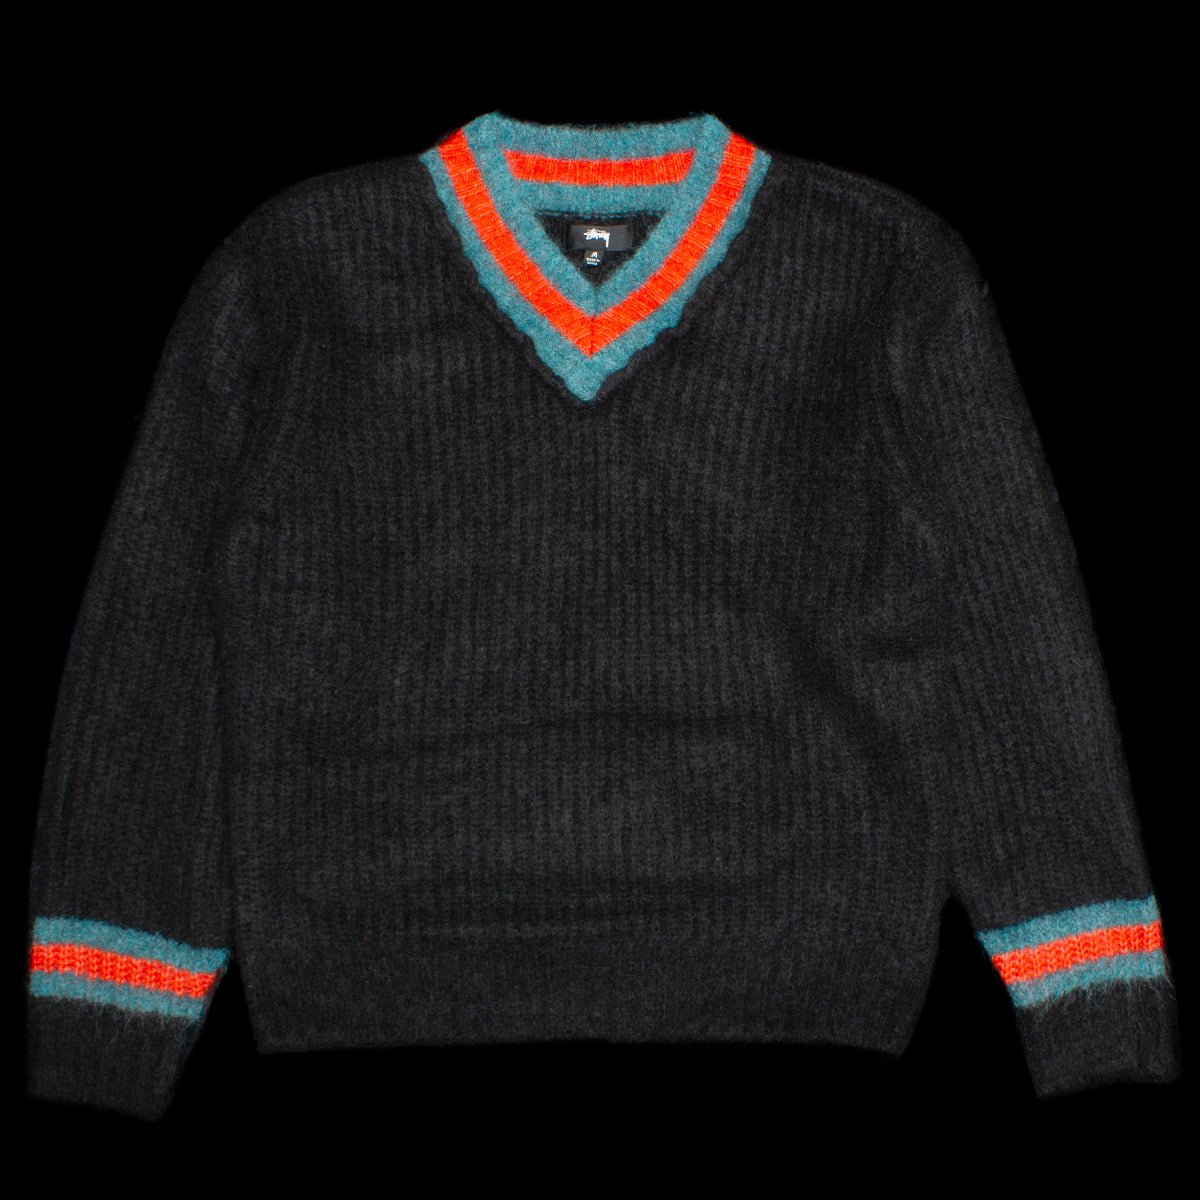 Mohair Tennis Sweater